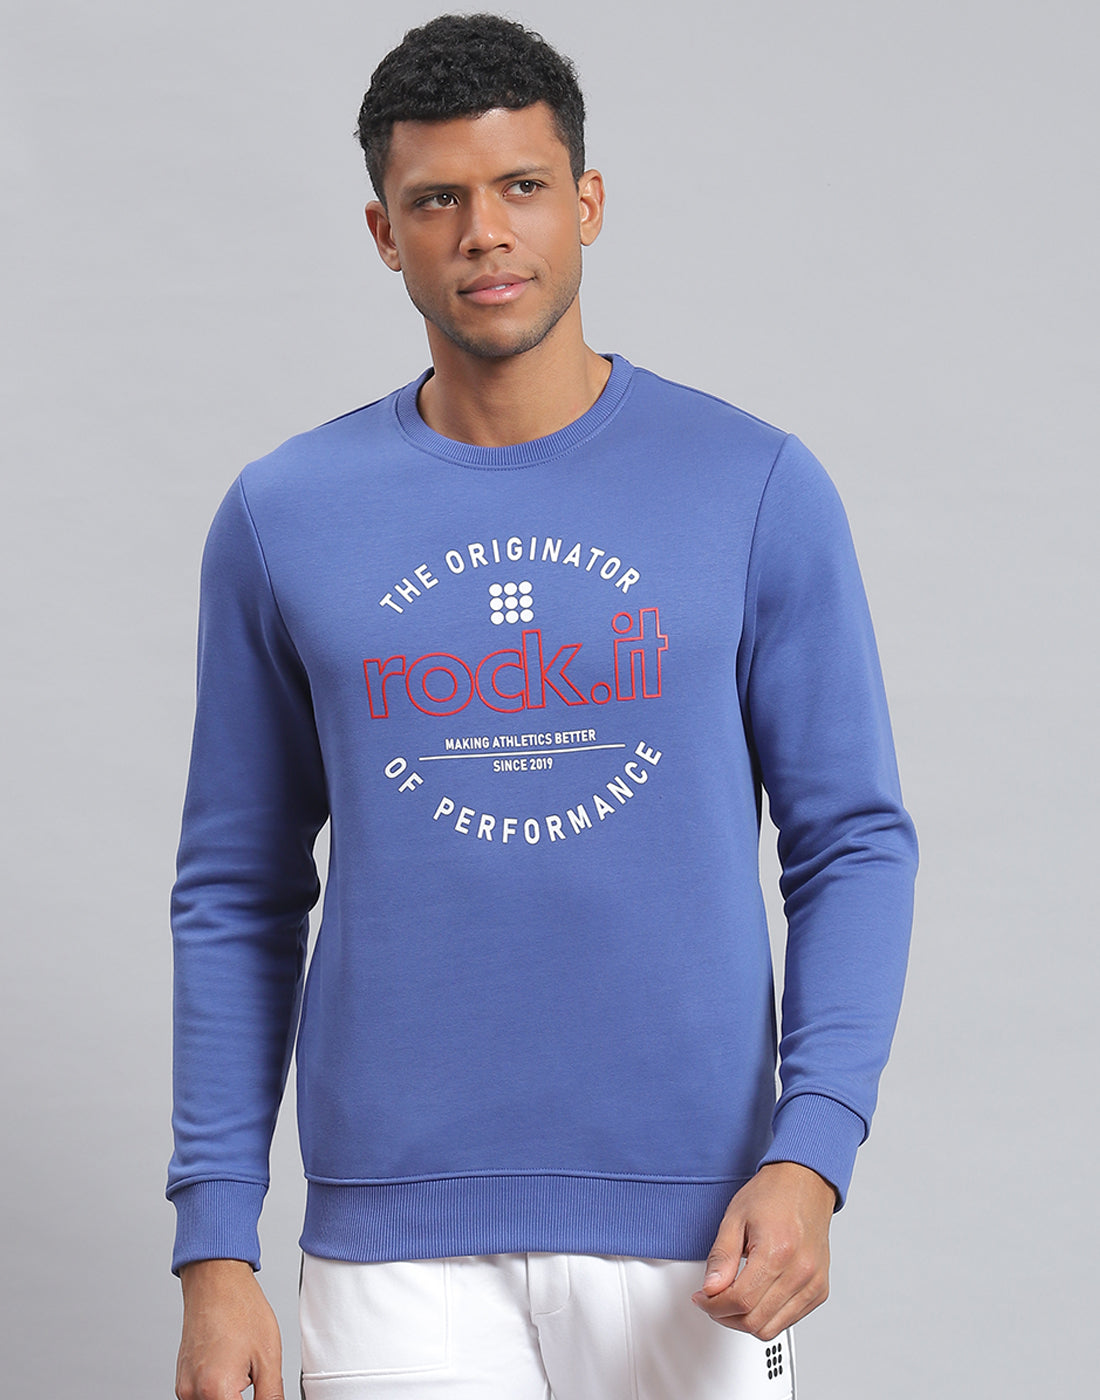 Buy Sweatshirts For Men Online - Gents Sweatshirts - Monte Carlo